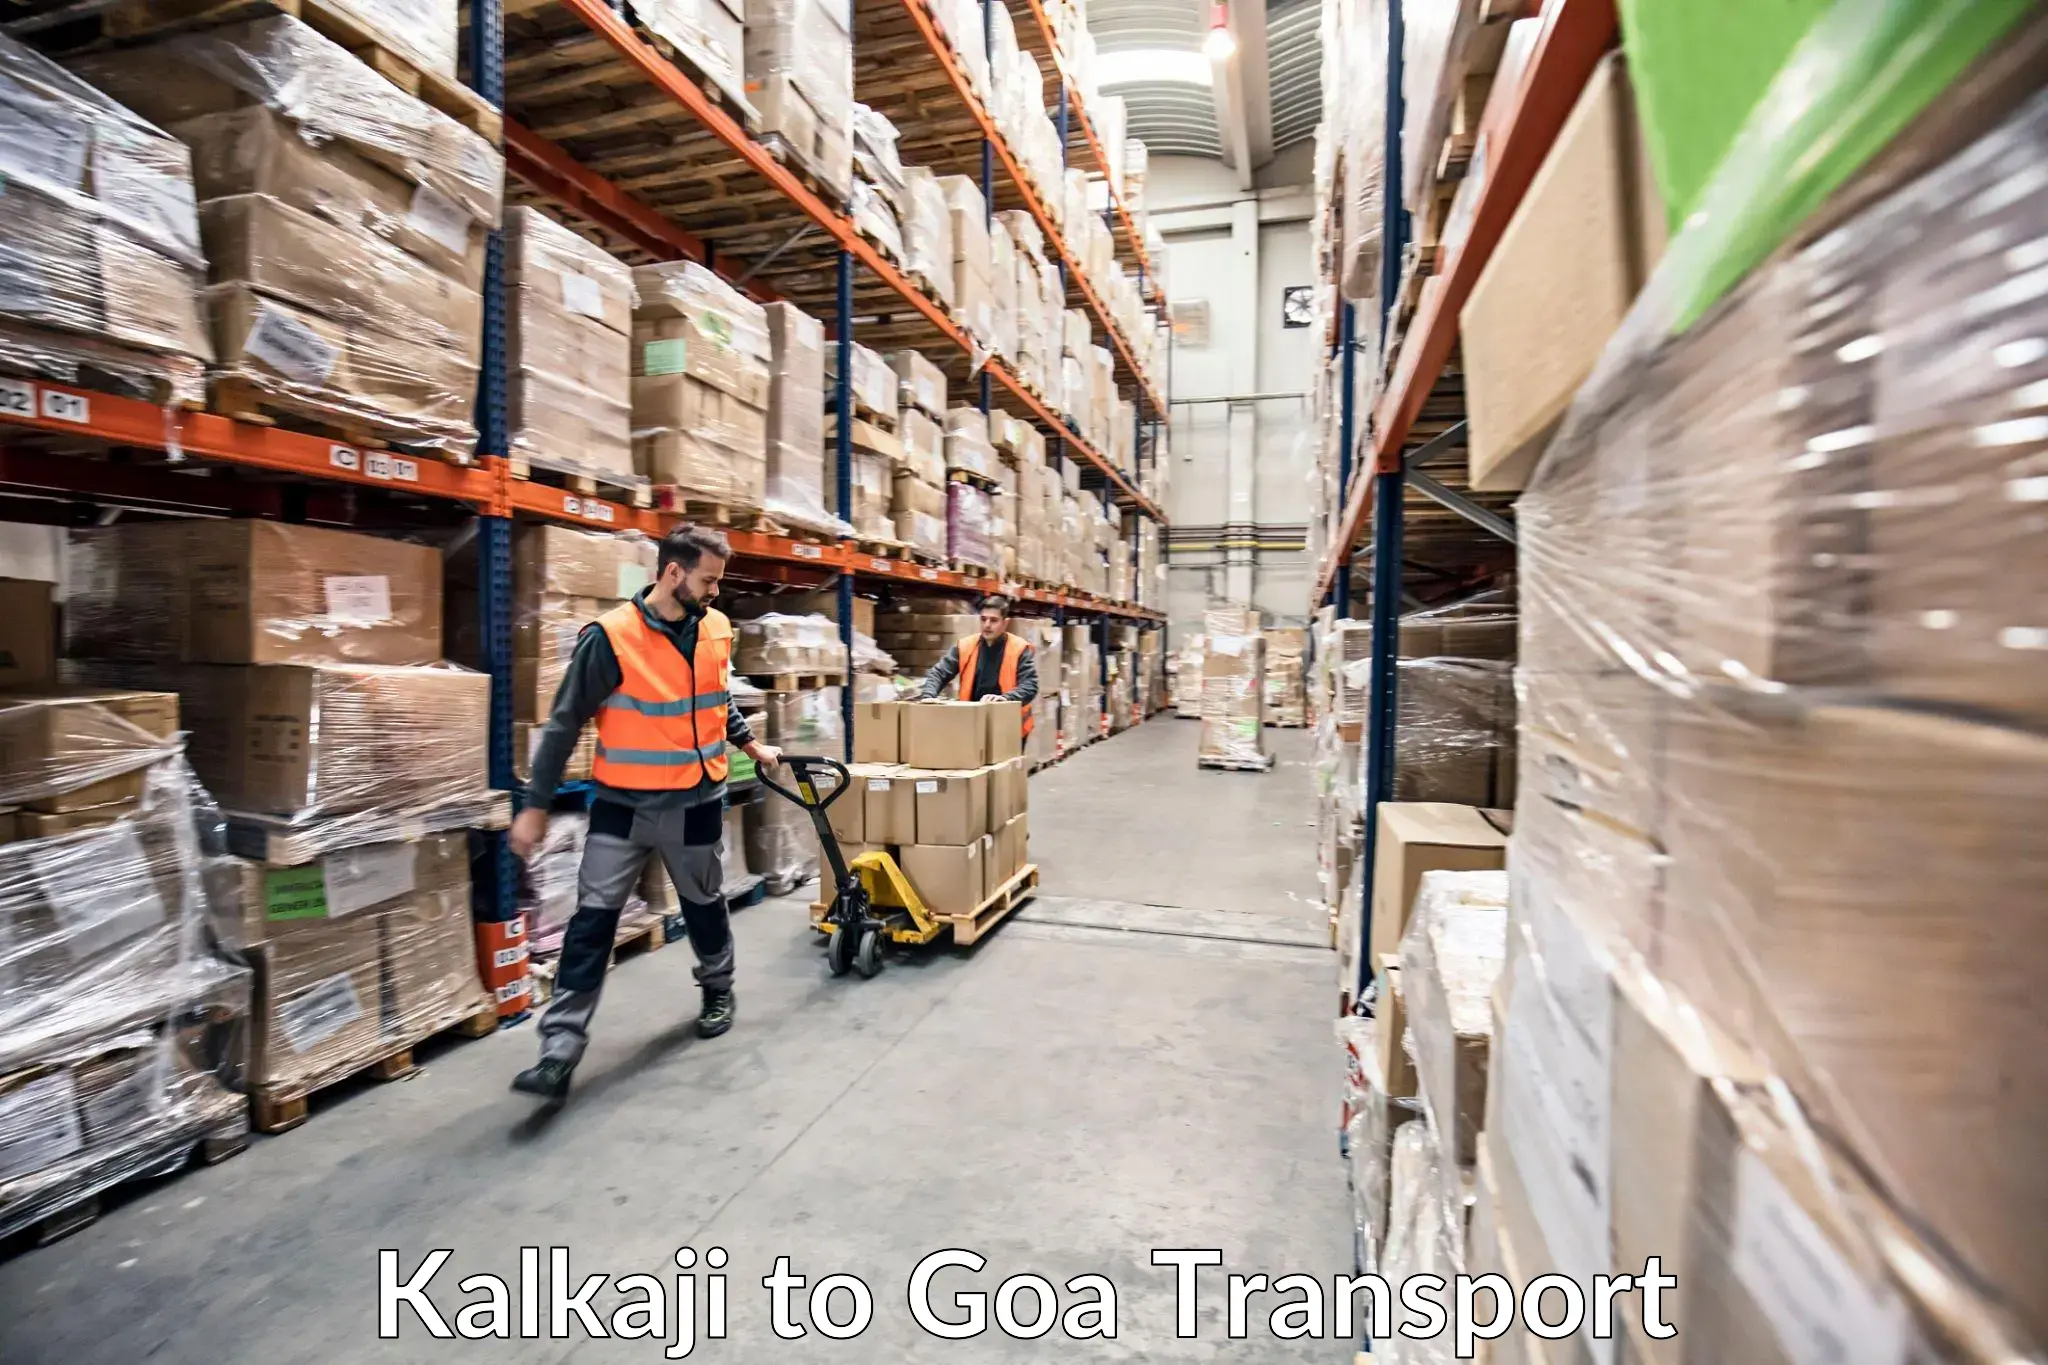 Nearby transport service Kalkaji to Sanvordem